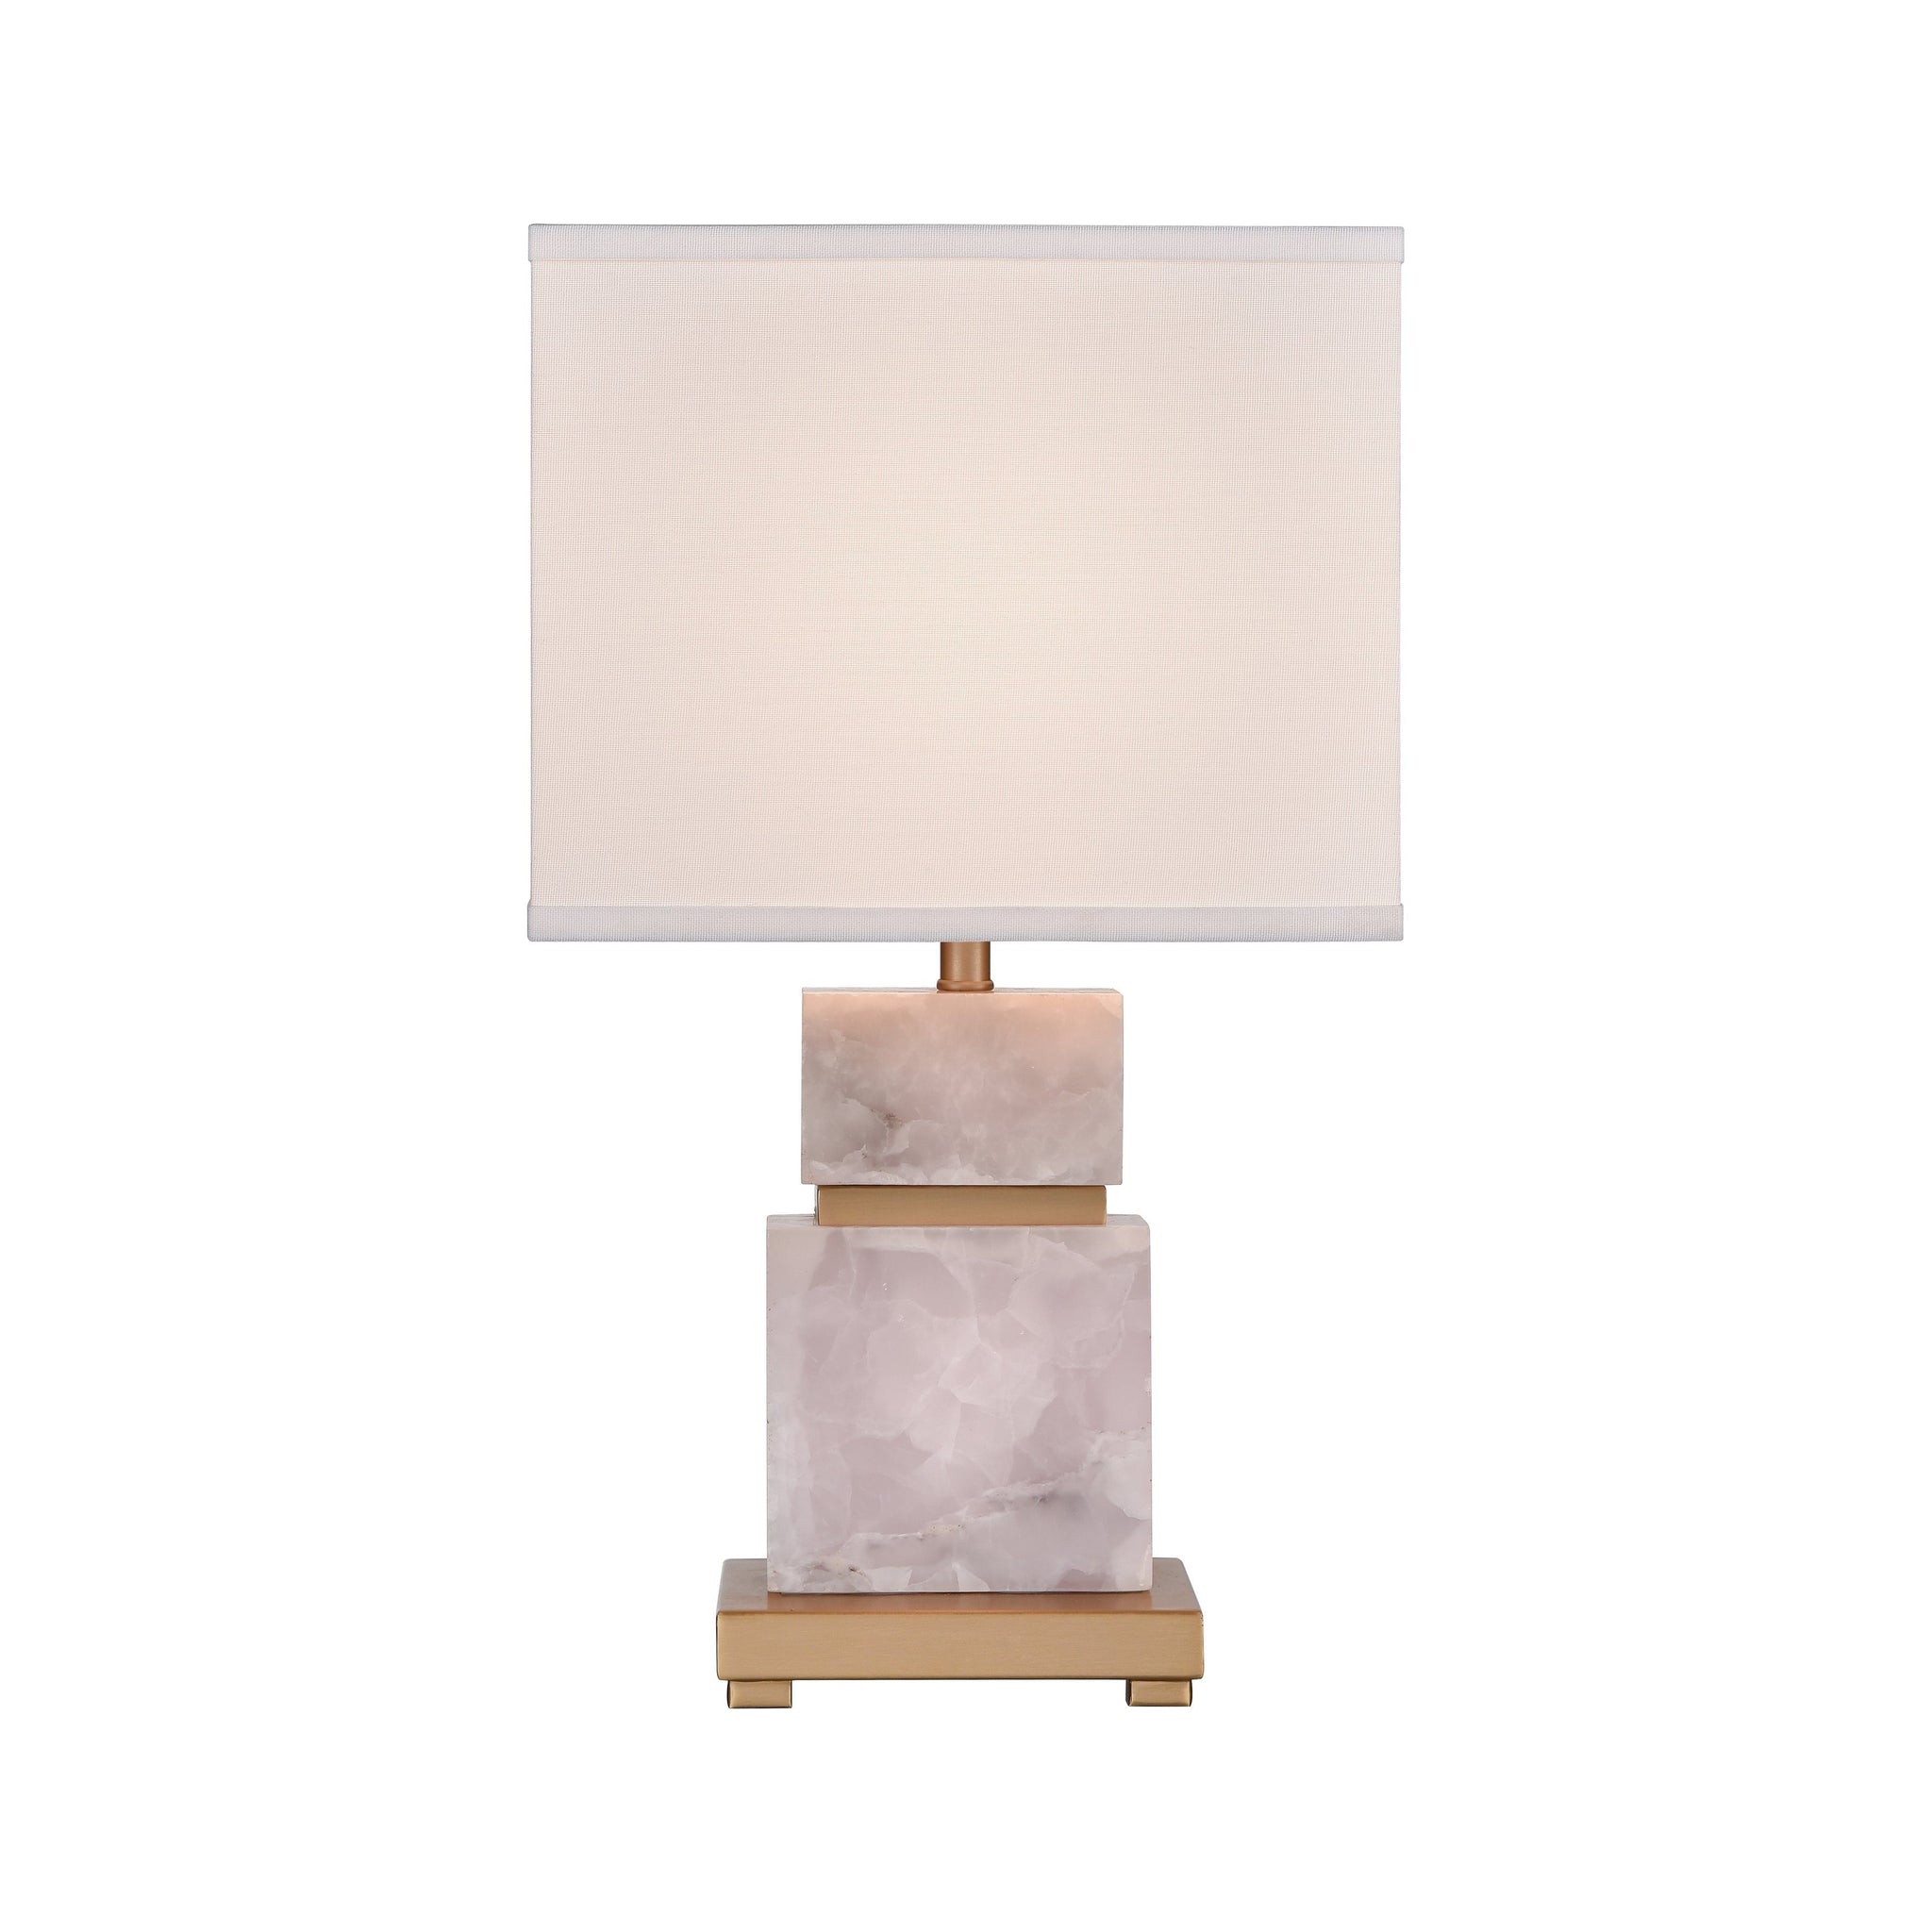 Alcott 21.5" High 1-Light Table Lamp